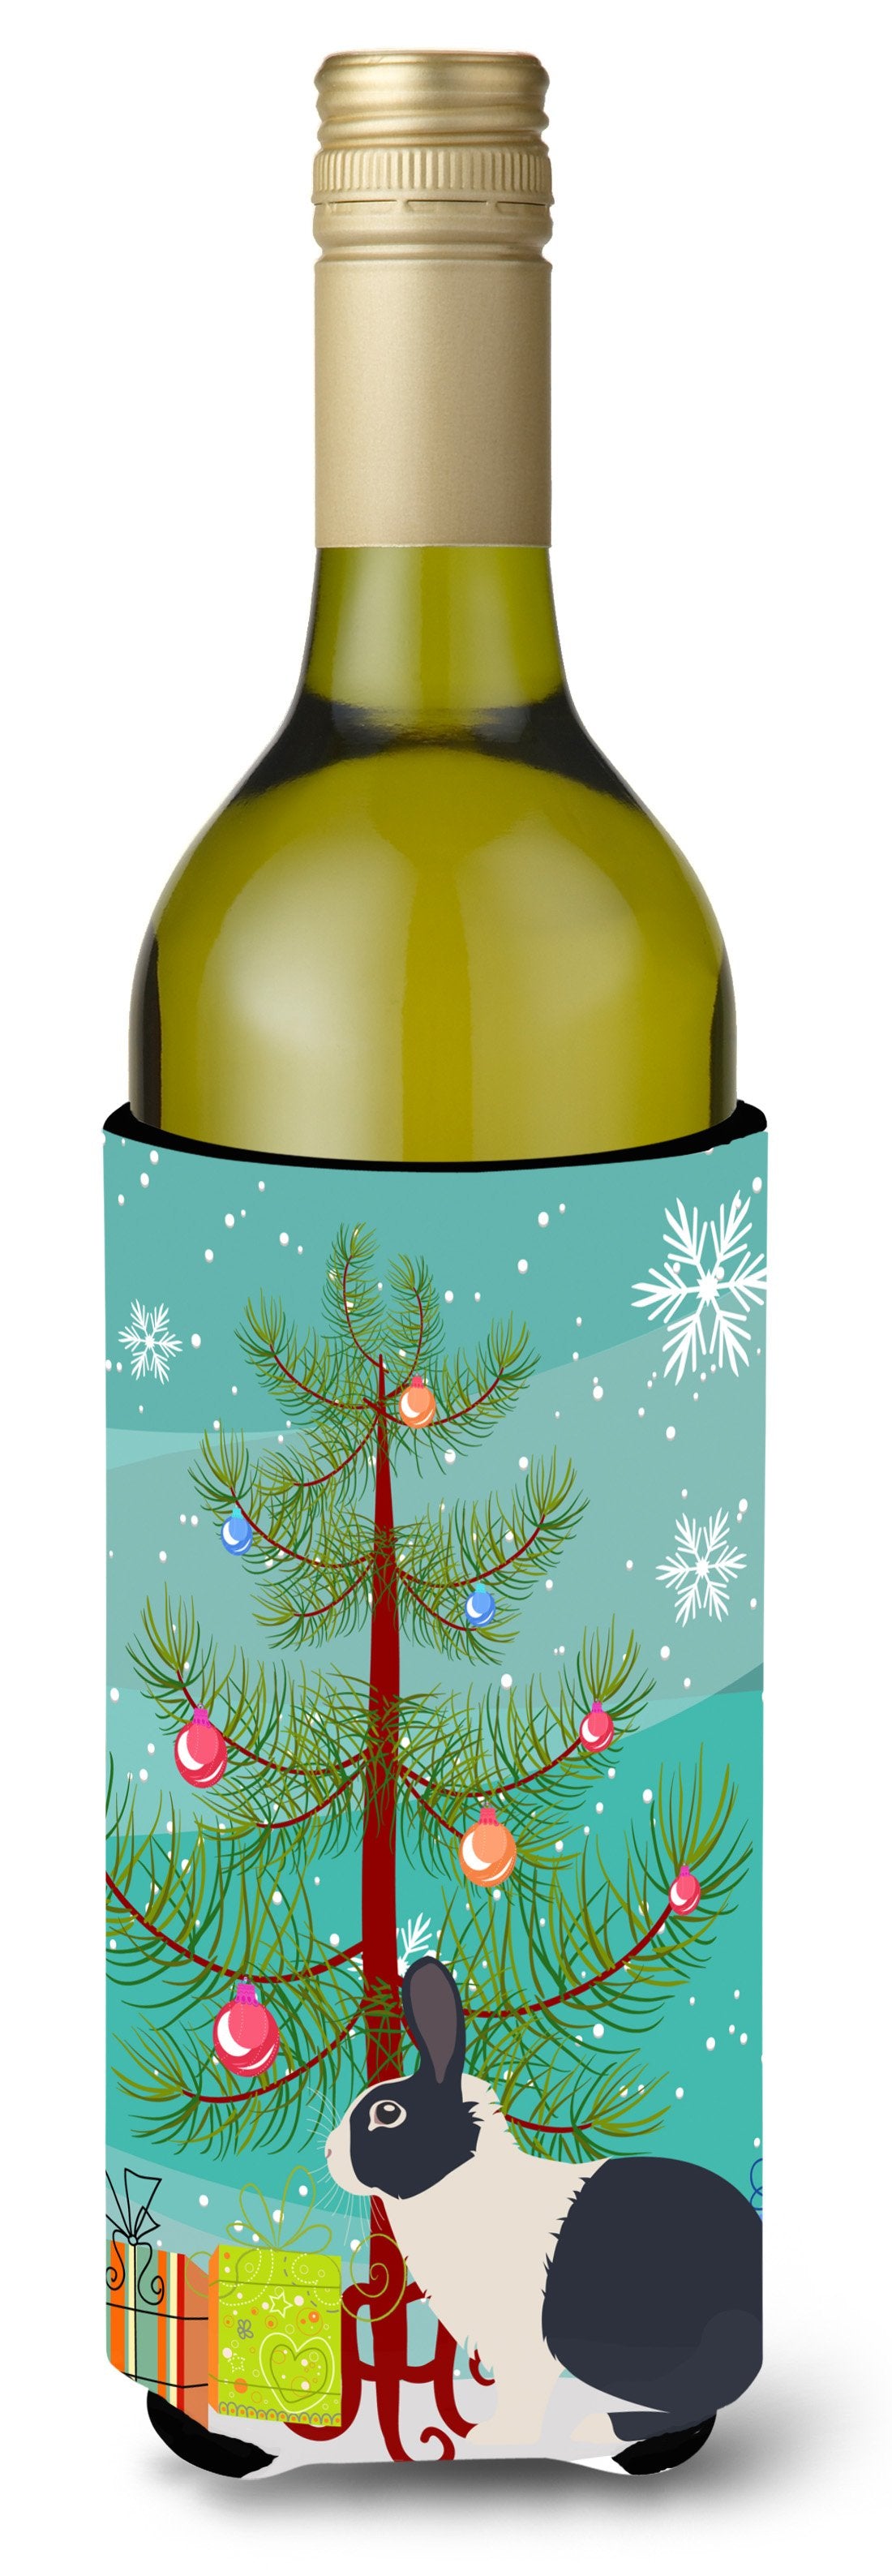 Dutch Rabbit Christmas Wine Bottle Beverge Insulator Hugger BB9325LITERK by Caroline's Treasures